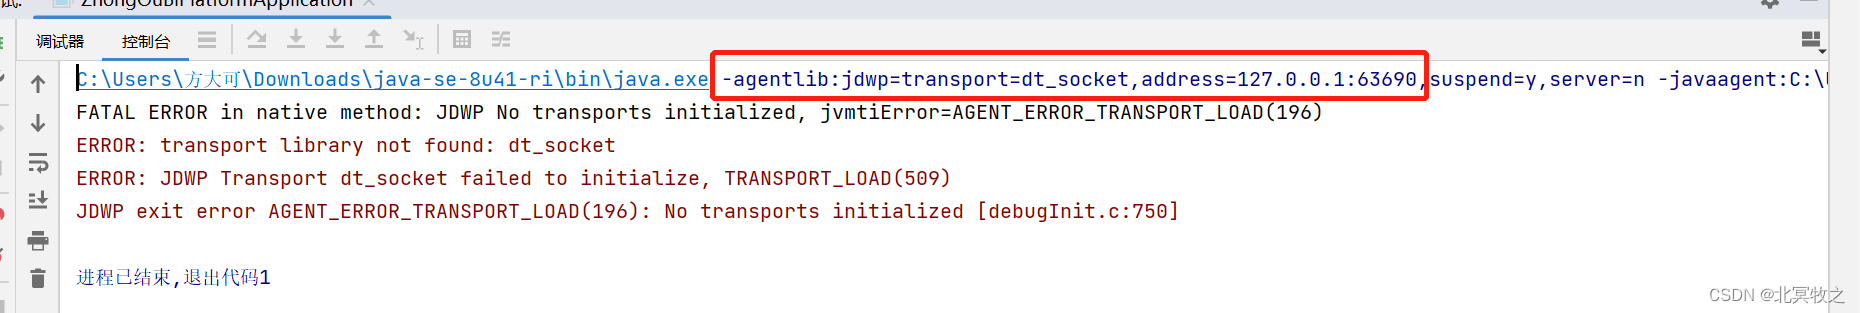 FATAL ERROR in native method: JDWP No transports initialized, jvmtiError=AGENT_ERROR_TRANSPORT_